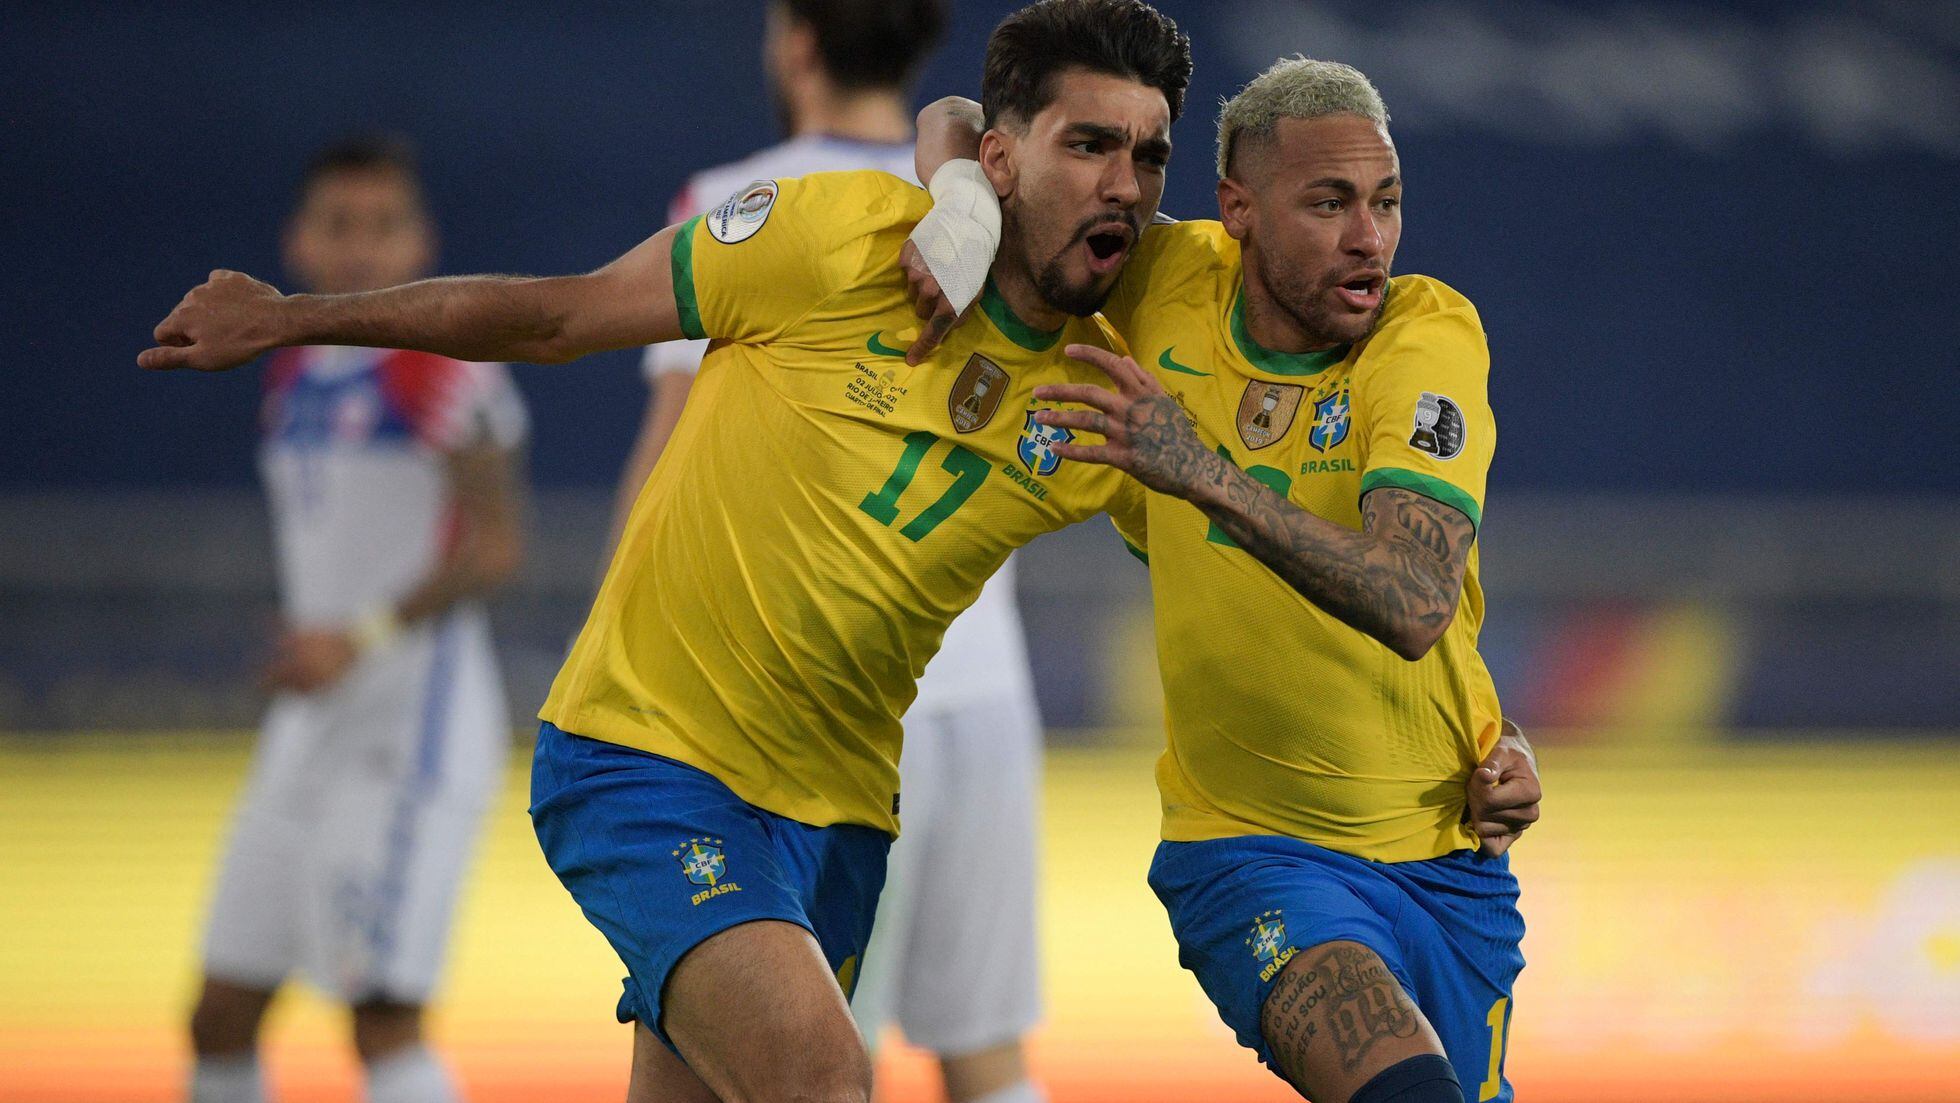 Copa América 2019: app traz tabela de jogos, notícias e estatísticas